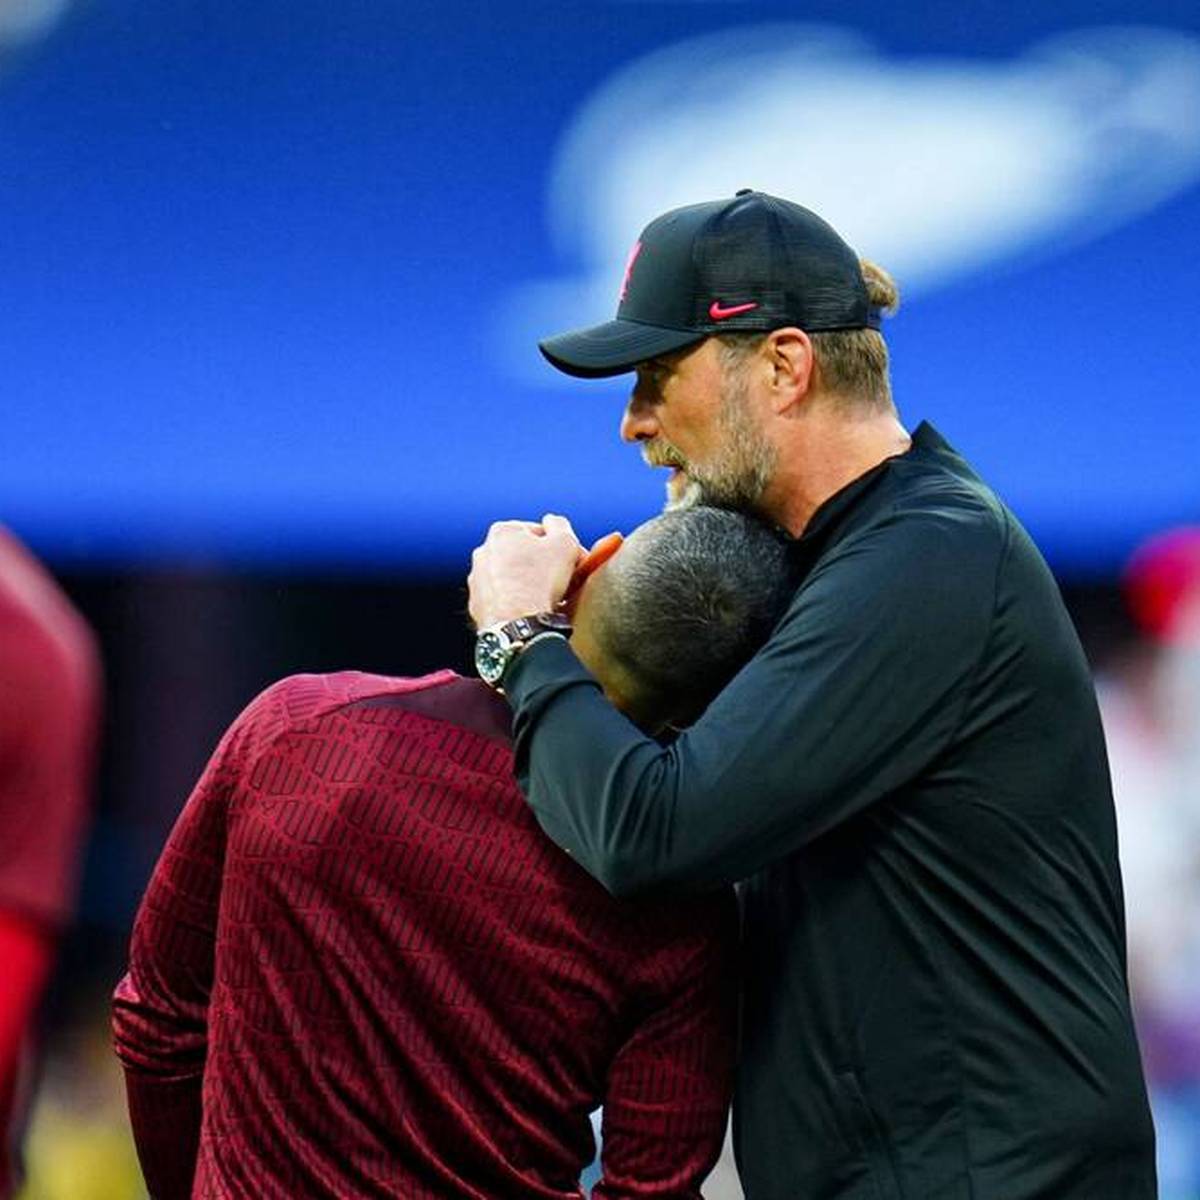 Ende Mai verlor Liverpool das Champions-League-Finale gegen Real Madrid. Der Co-Trainer der Reds hat jetzt verraten, dass Thiago das Finale beinahe verpasst hätte.